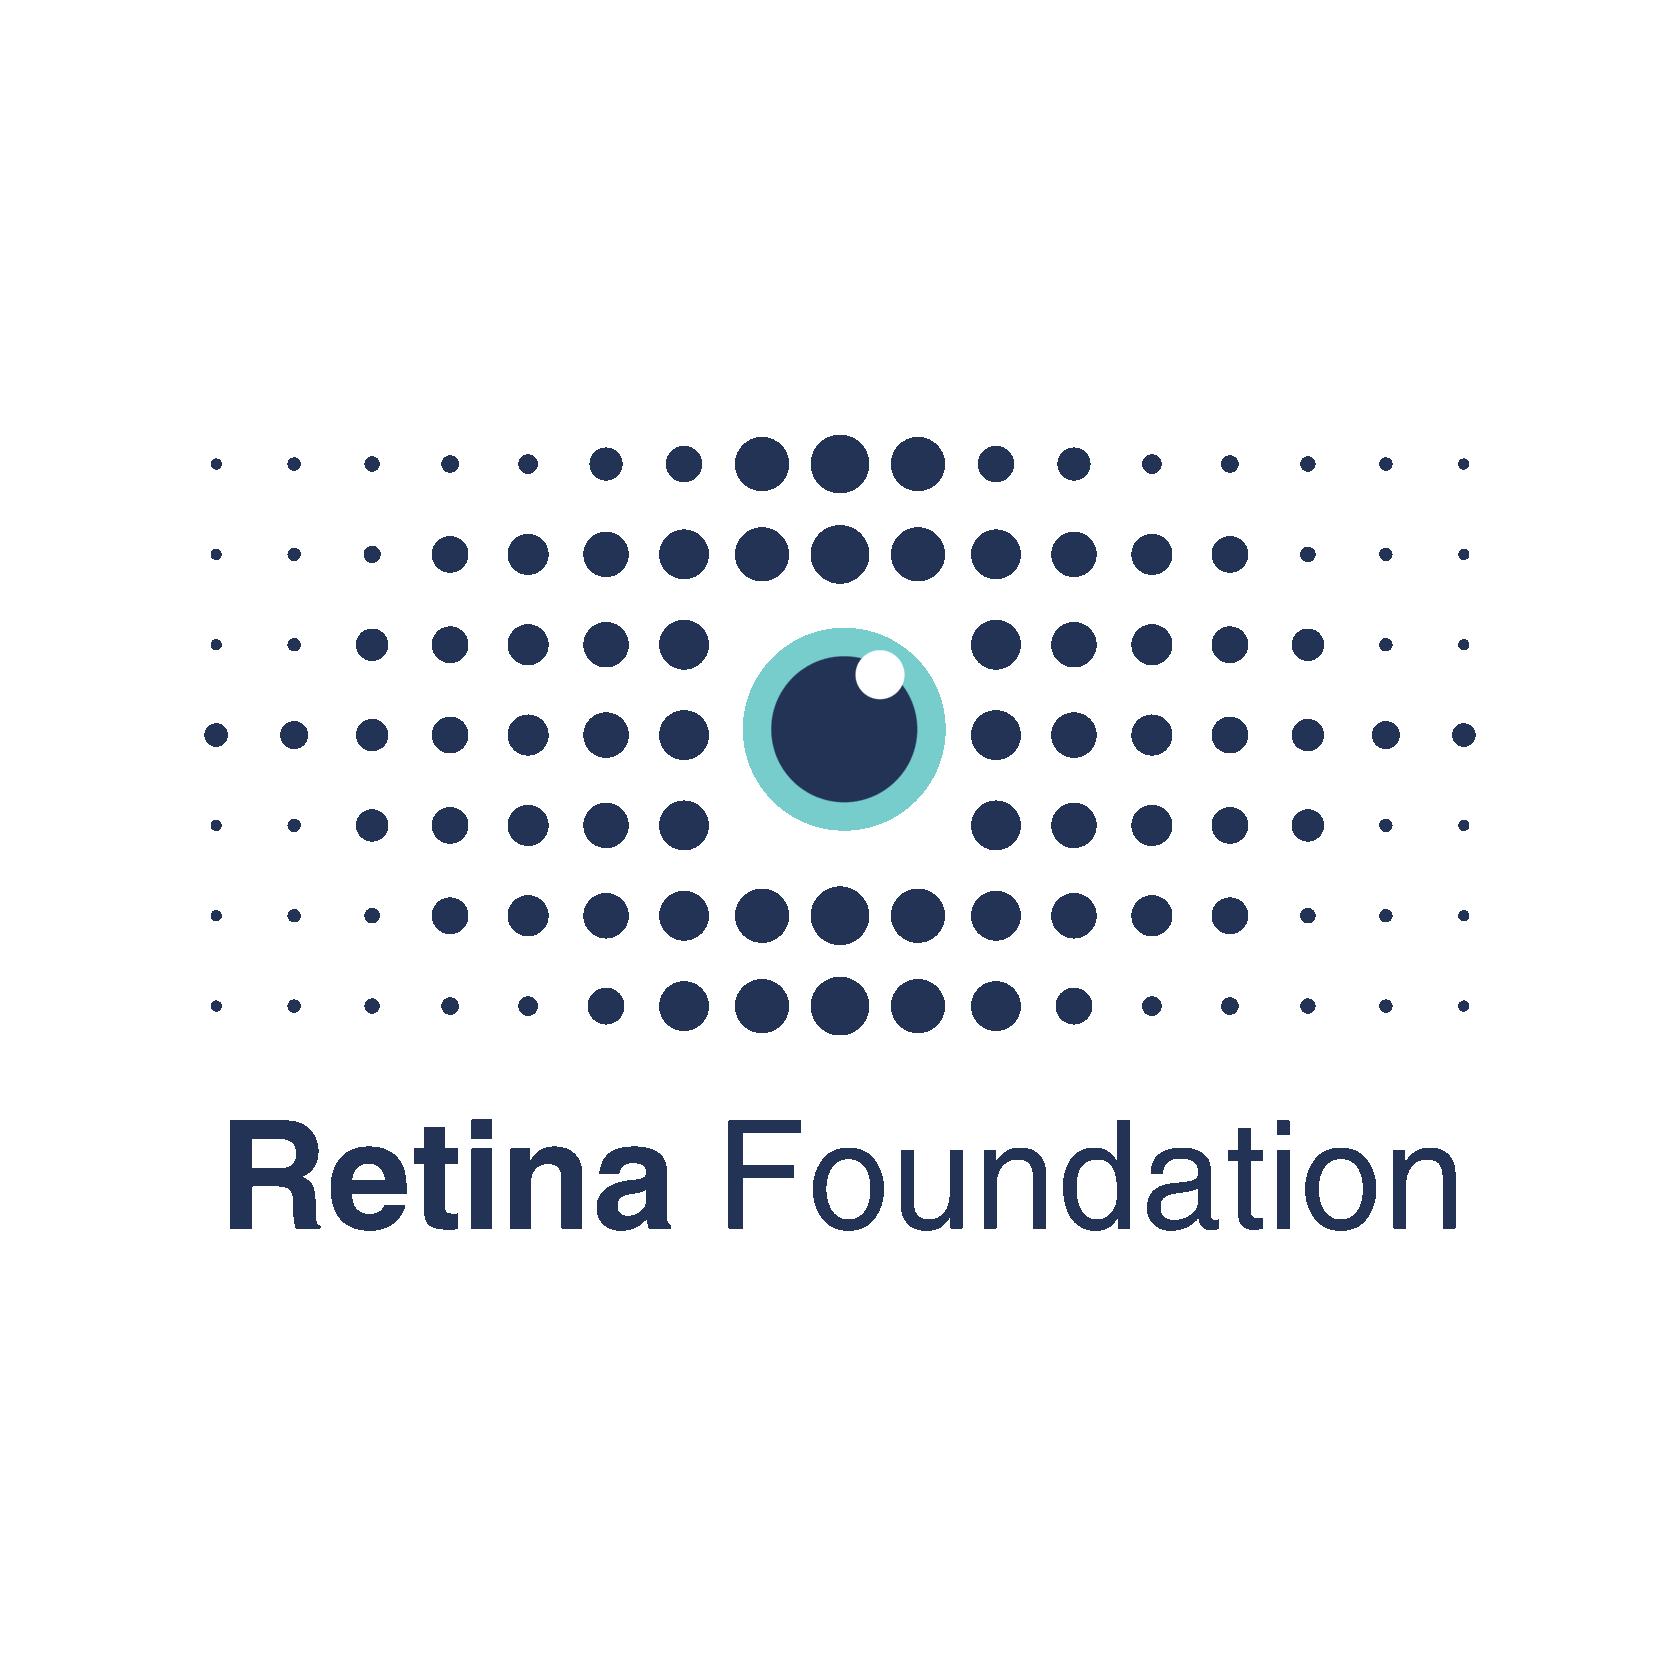  РетинаФонд Фонд исследований и лечения заболеваний сетчатки глаза 